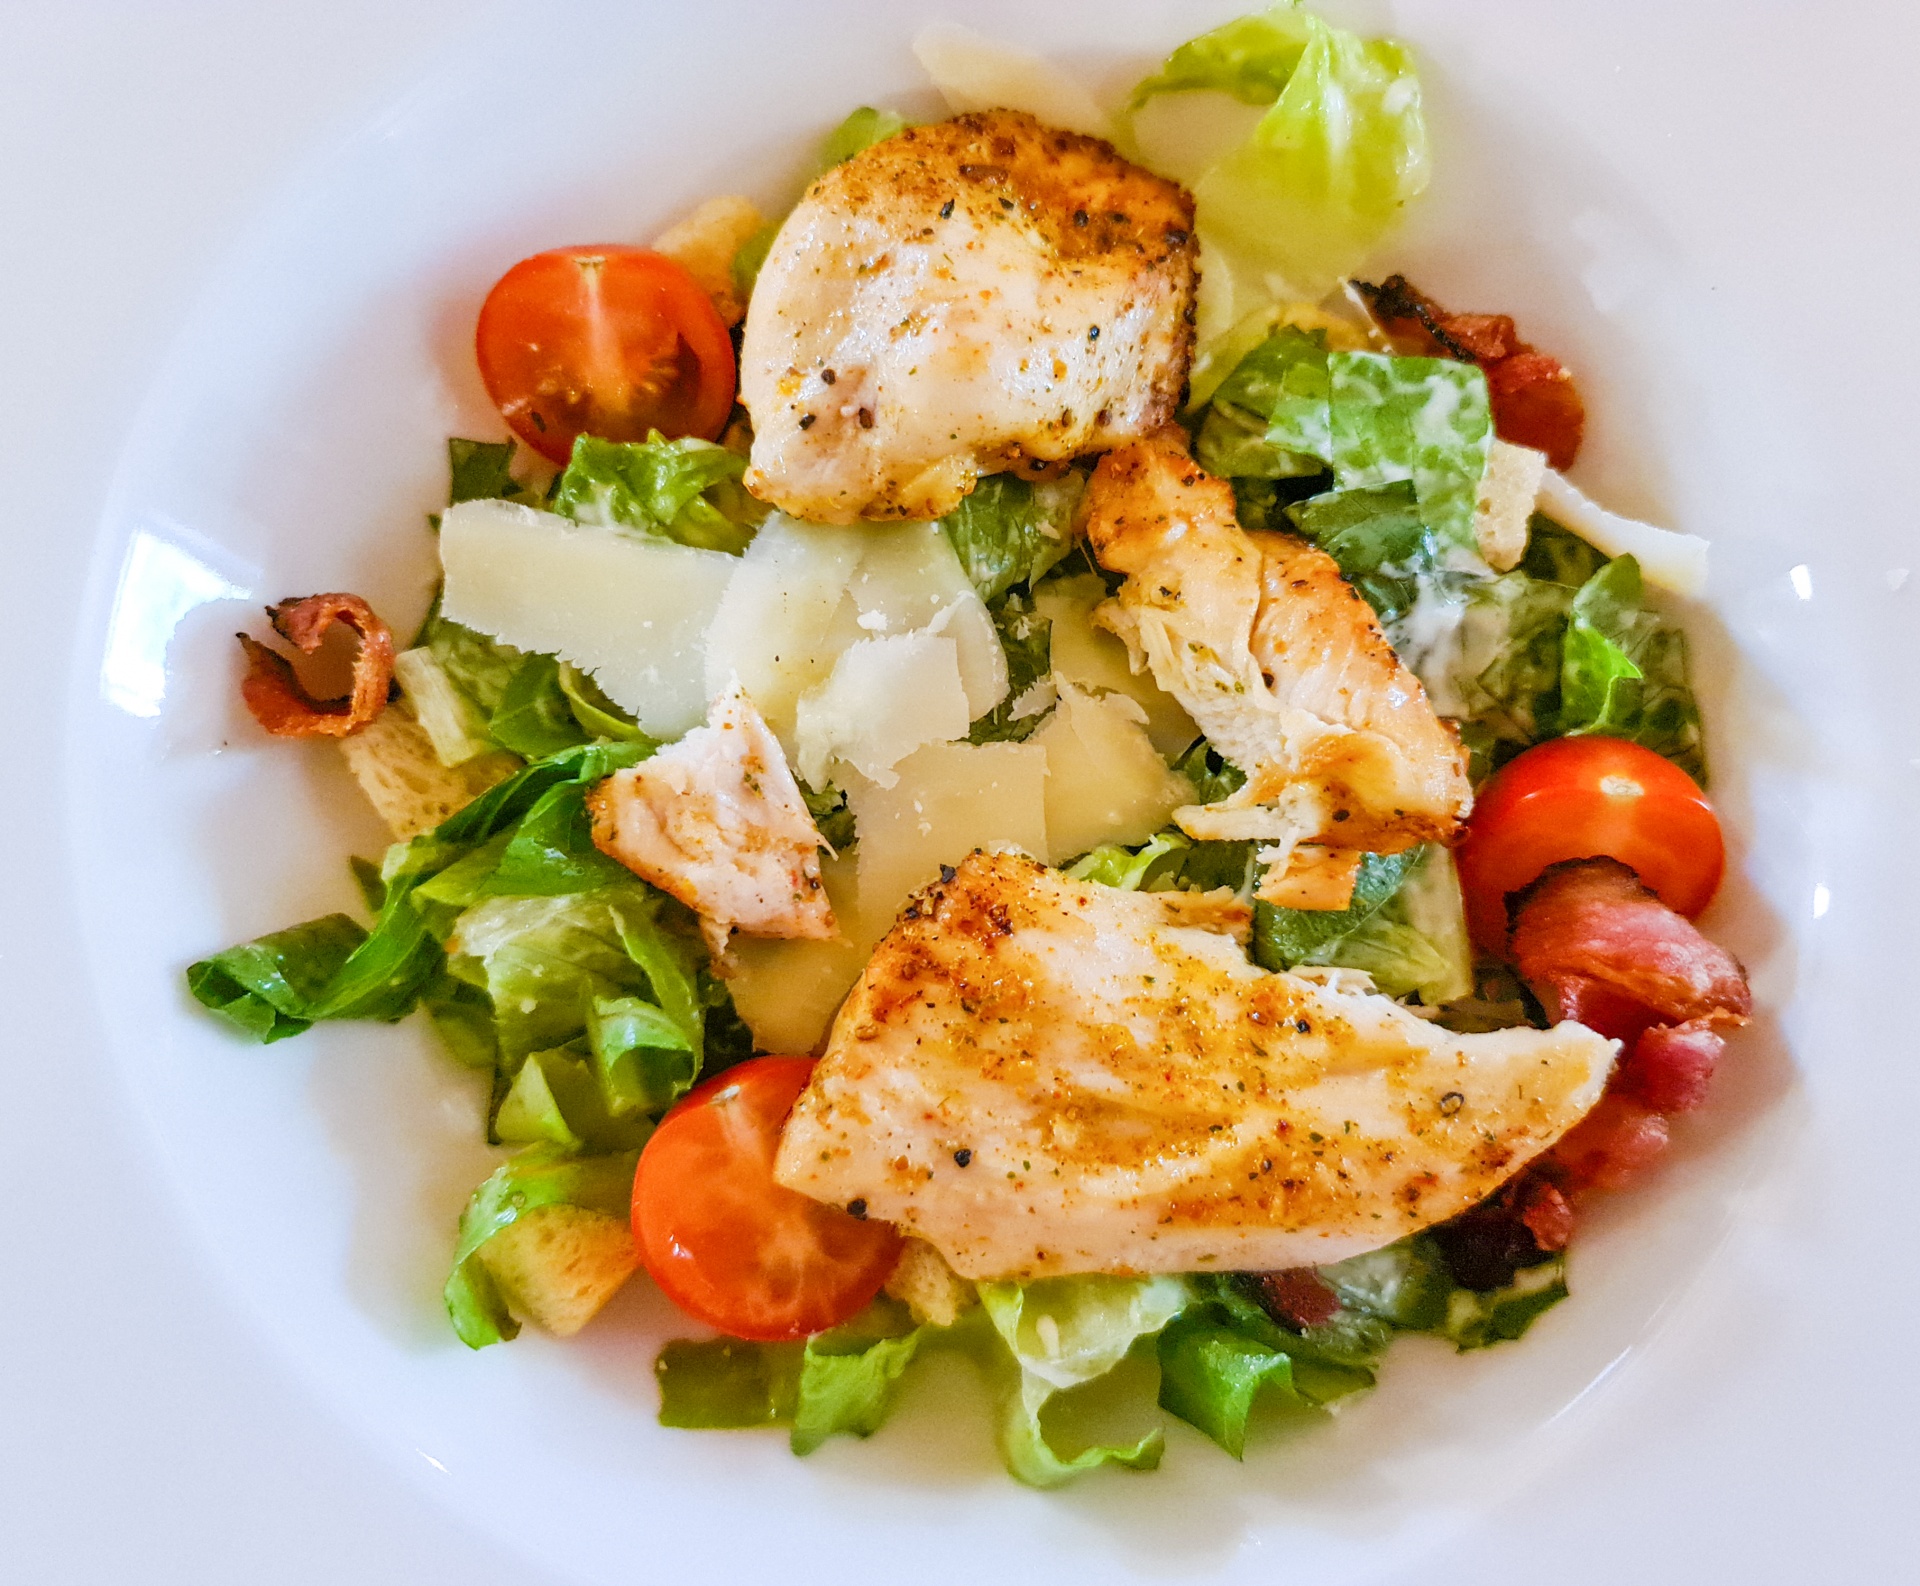 鸡胸肉蔬菜沙拉,鸡胸肉蔬菜沙拉的家常做法 - 美食杰鸡胸肉蔬菜沙拉做法大全